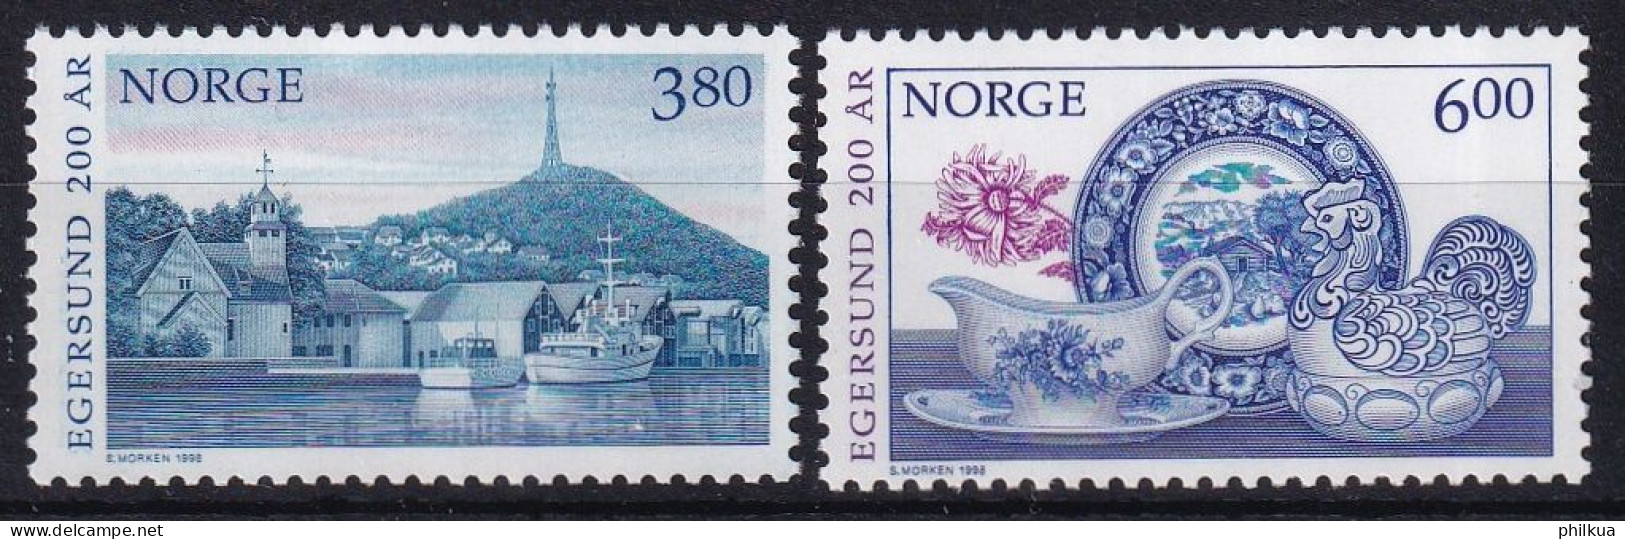 MiNr. 1278 - 1279 Norwegen       1998, 20. April. 200 Jahre Stadt Egersund - Postfrisch/**/MNH - Neufs